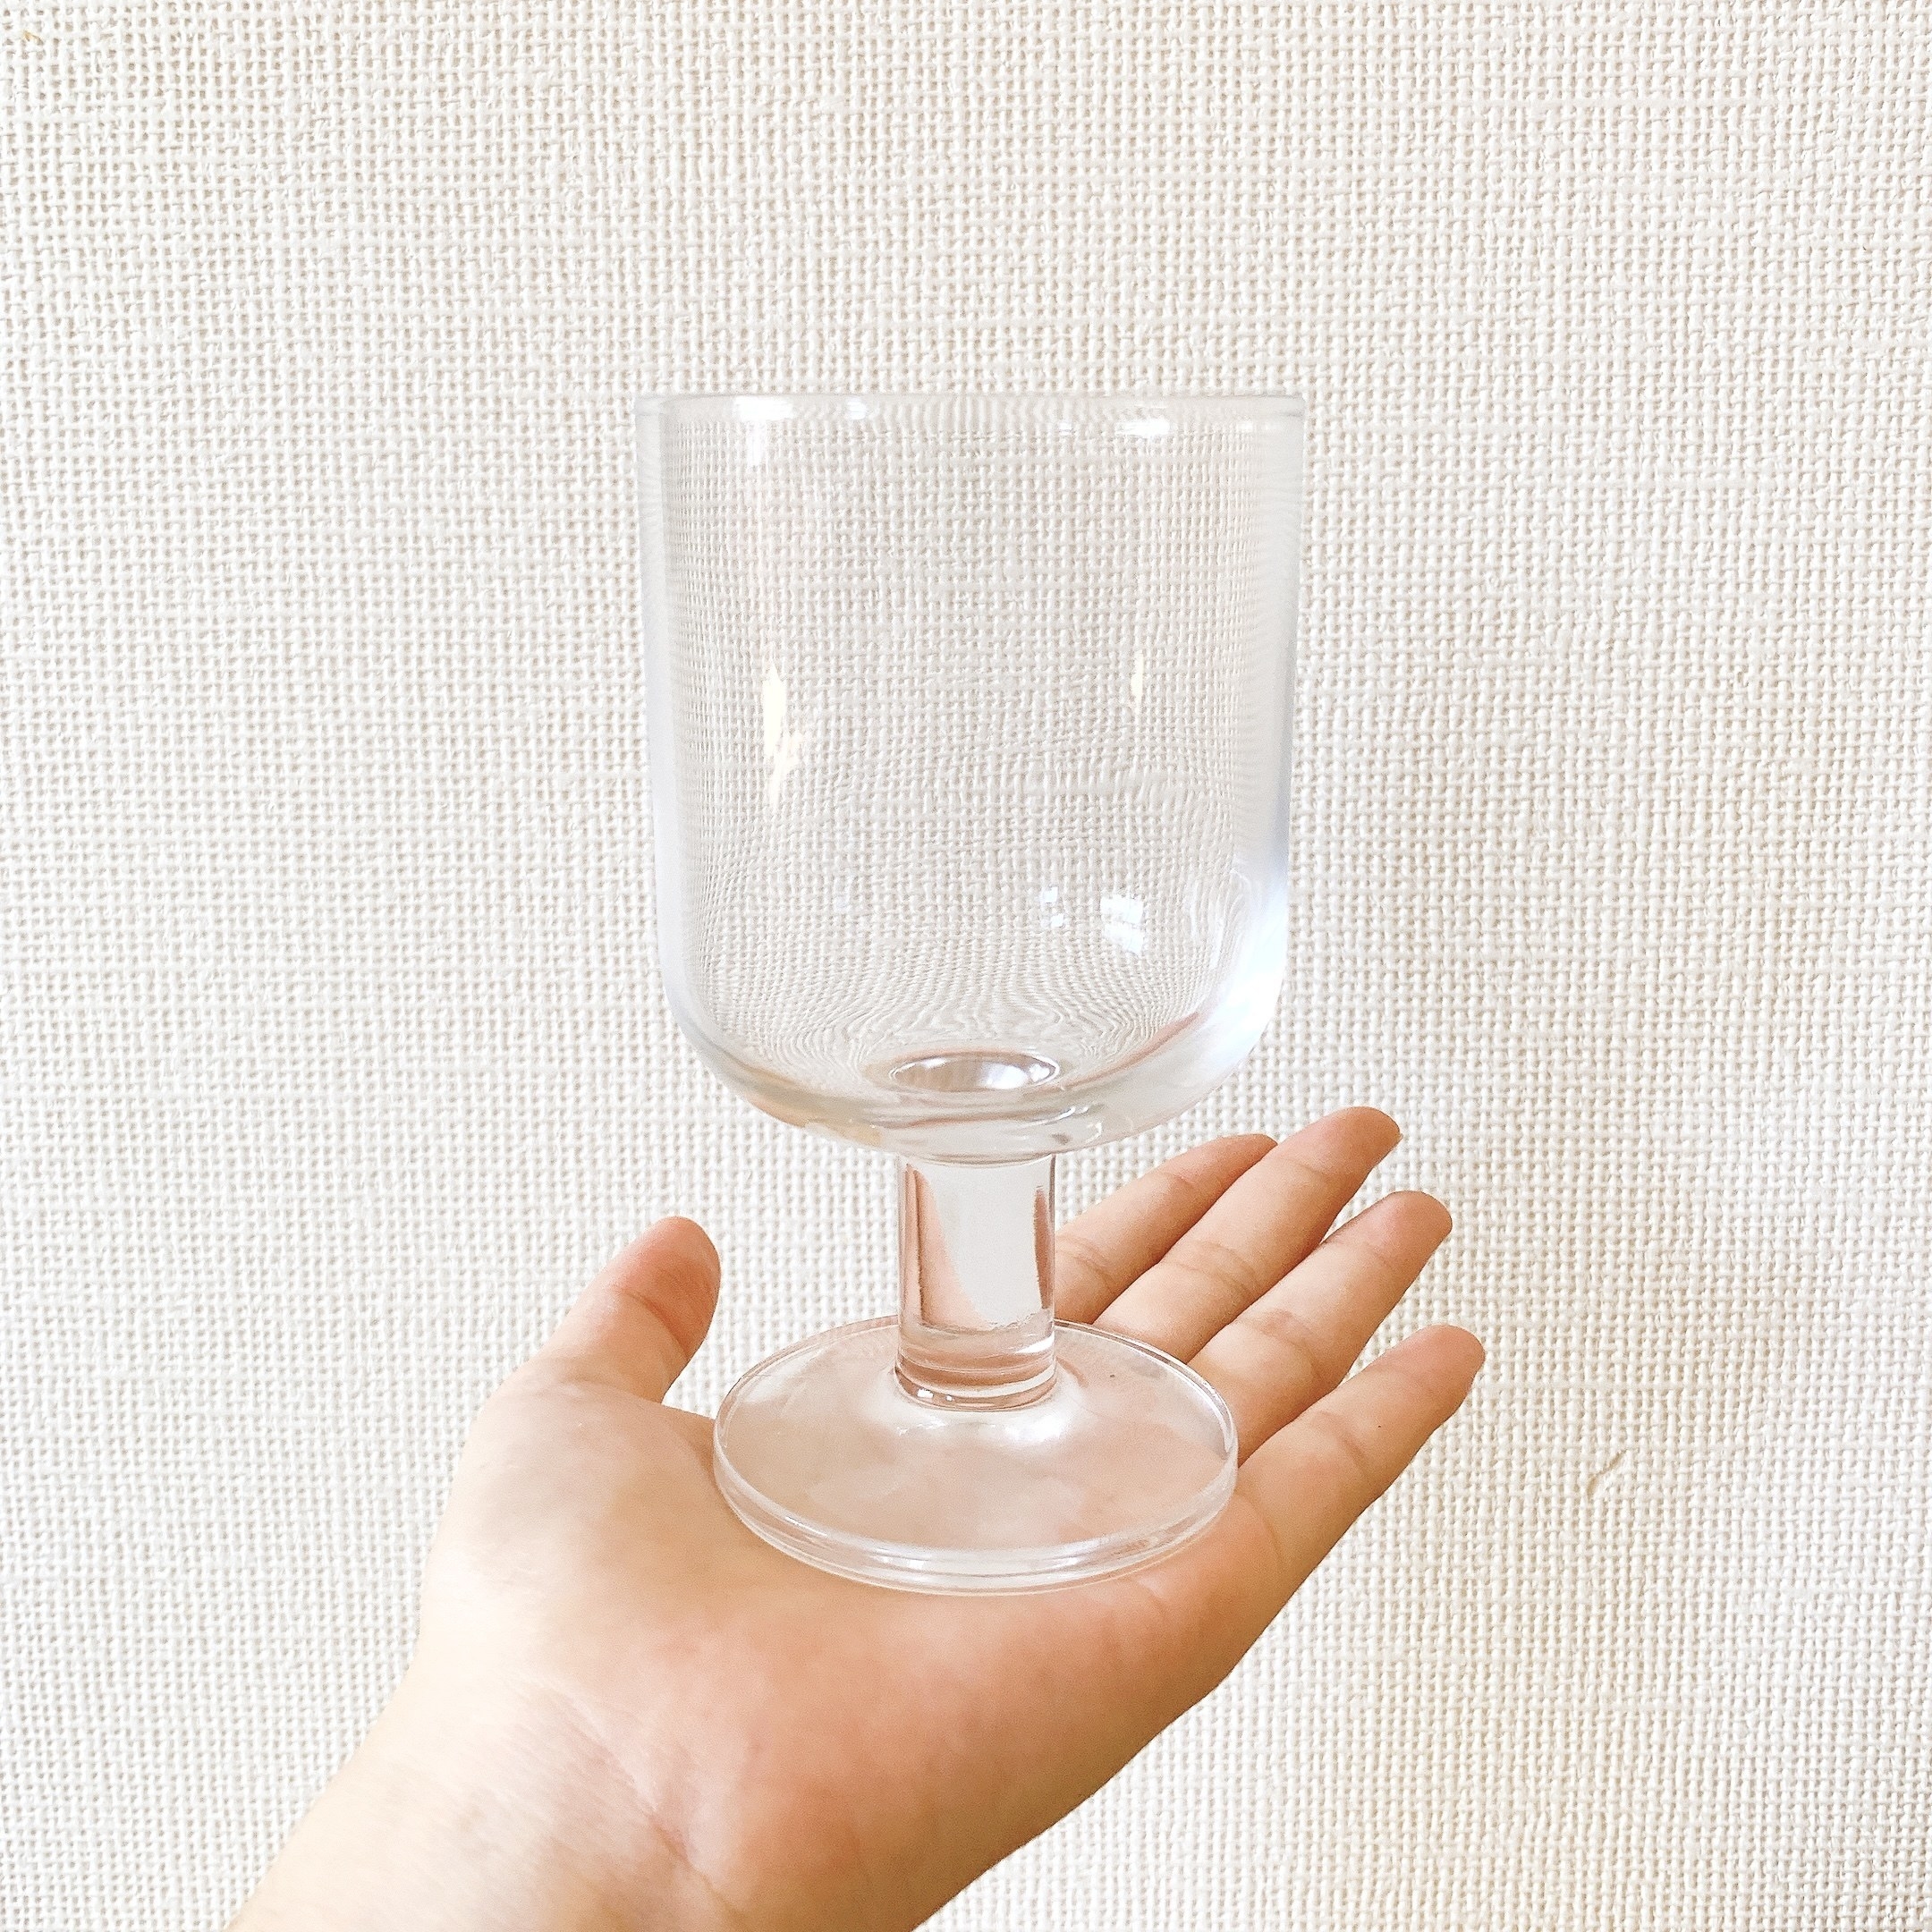 無印良品のオススメ食器「強化ガラス ステムグラス L」レトロかわいい人気のオシャレアイテム